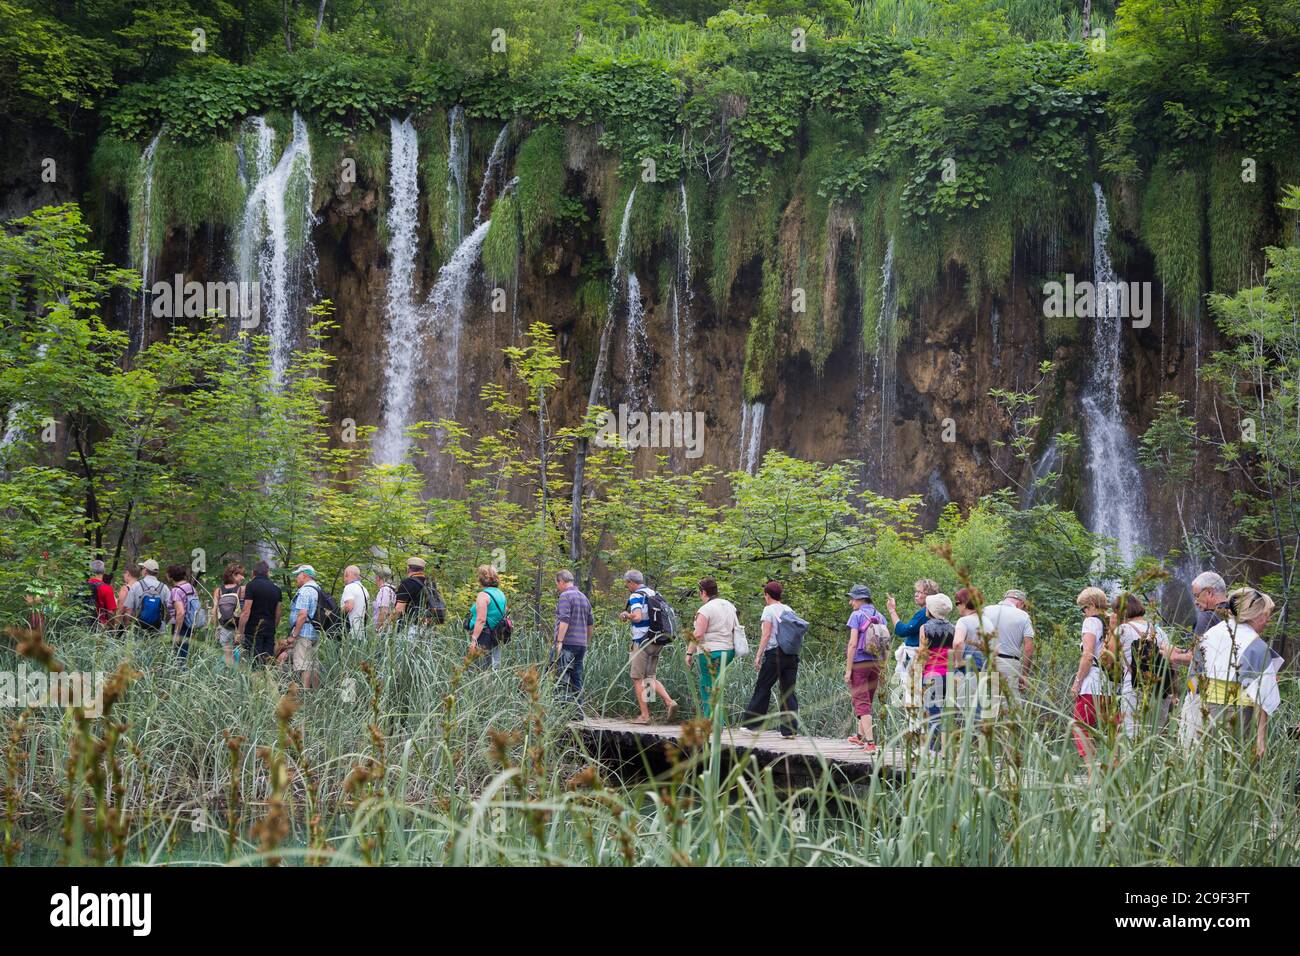 Parque Nacional de los Lagos de Plitvice, Condado de Lika-Senj y Condado de Karlovac, Croacia. Los visitantes pasean por los senderos de madera que cruzan el parque. Foto de stock